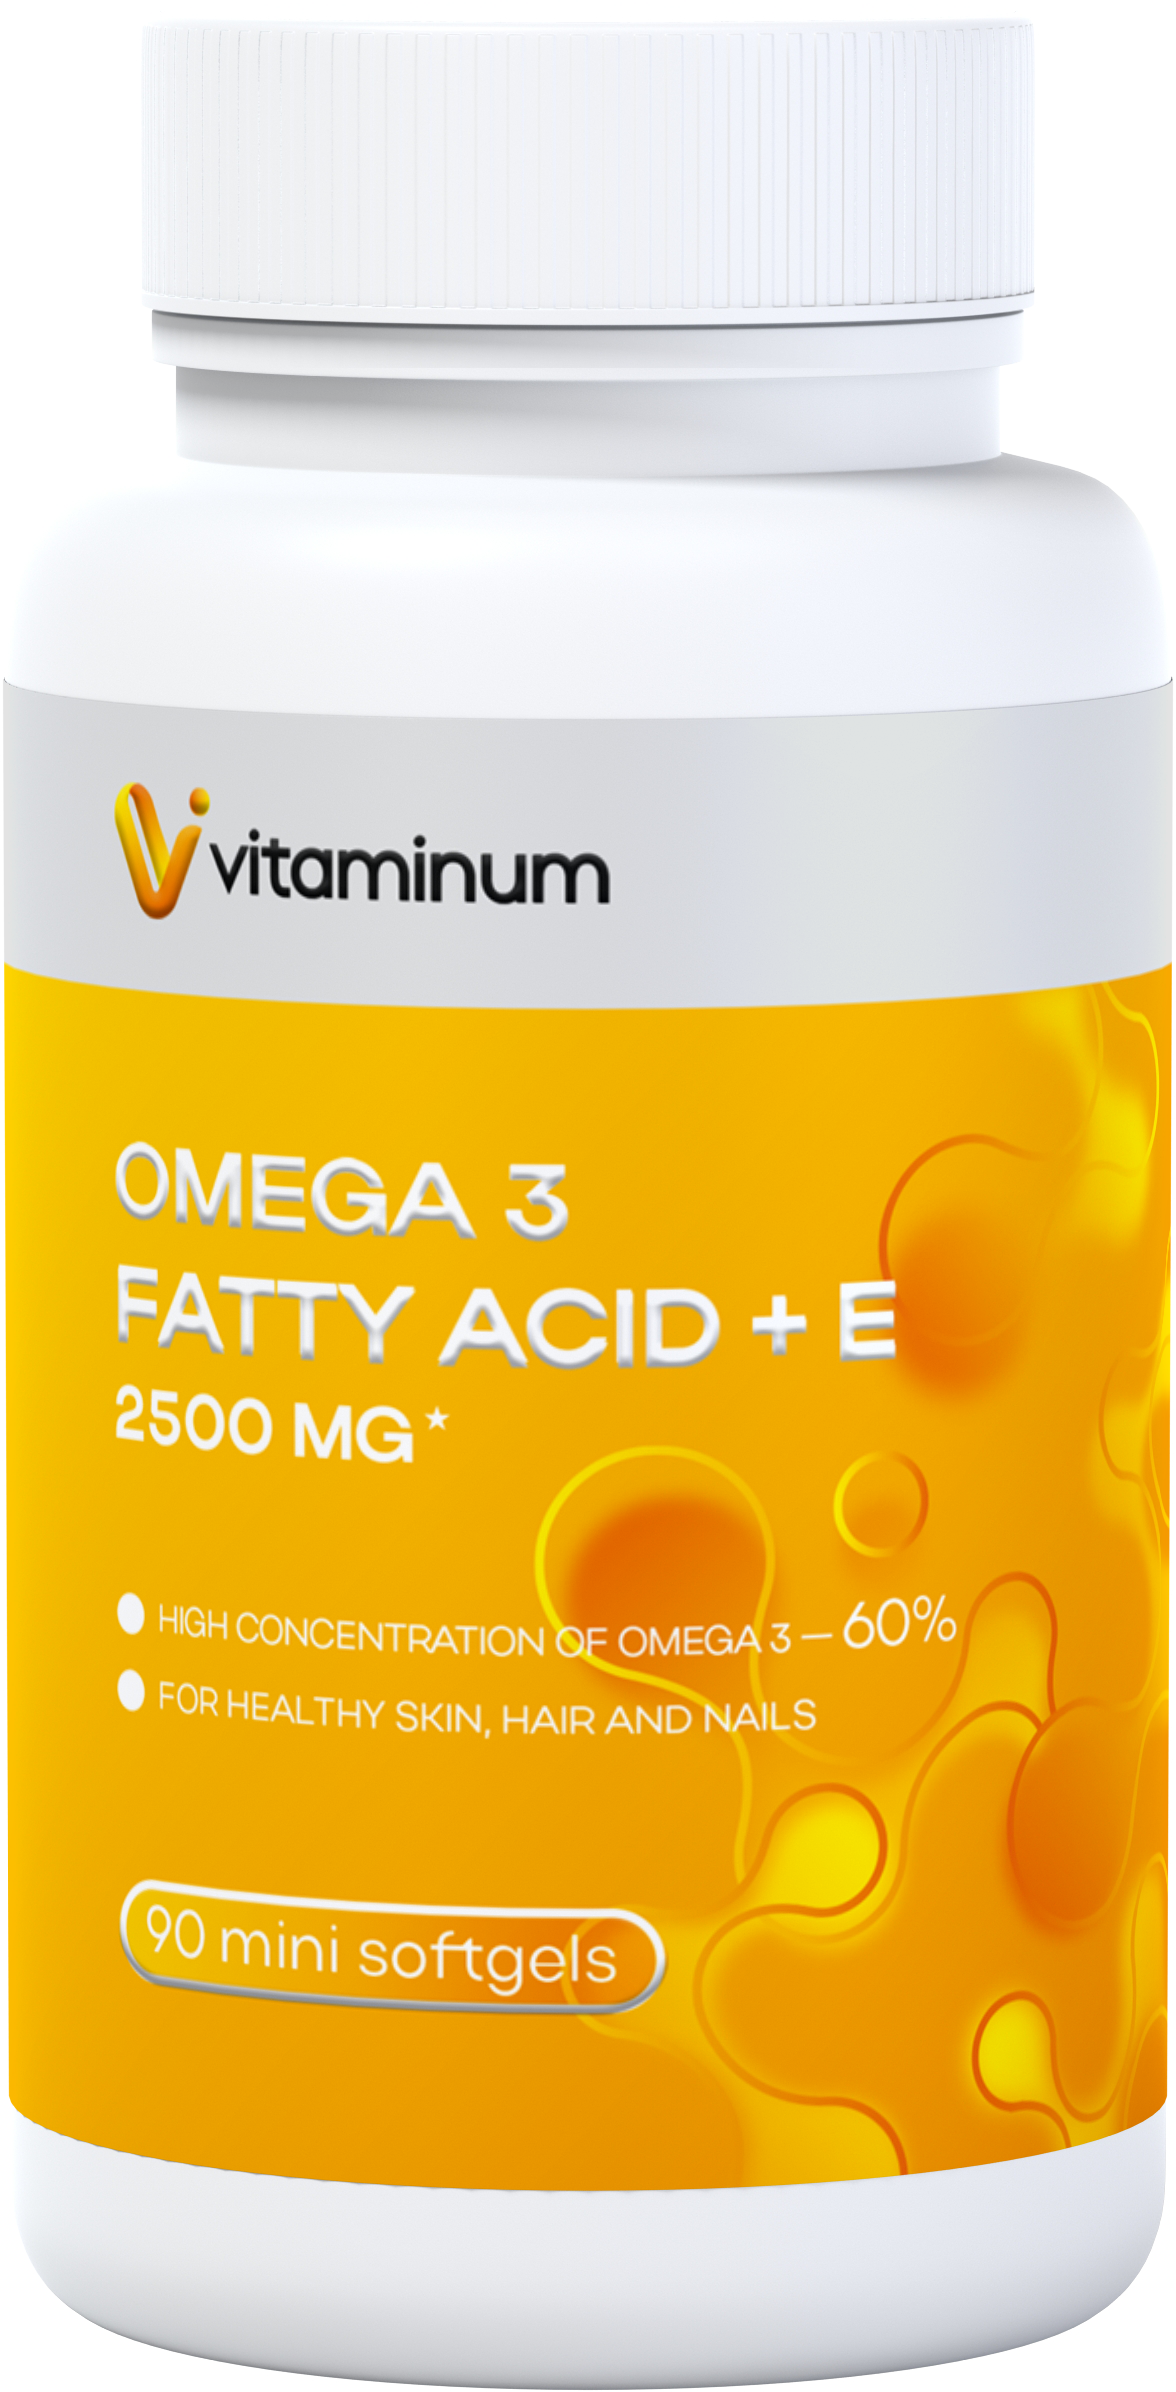  Vitaminum ОМЕГА 3 60% + витамин Е (2500 MG*) 90 капсул 700 мг   в Севастополе